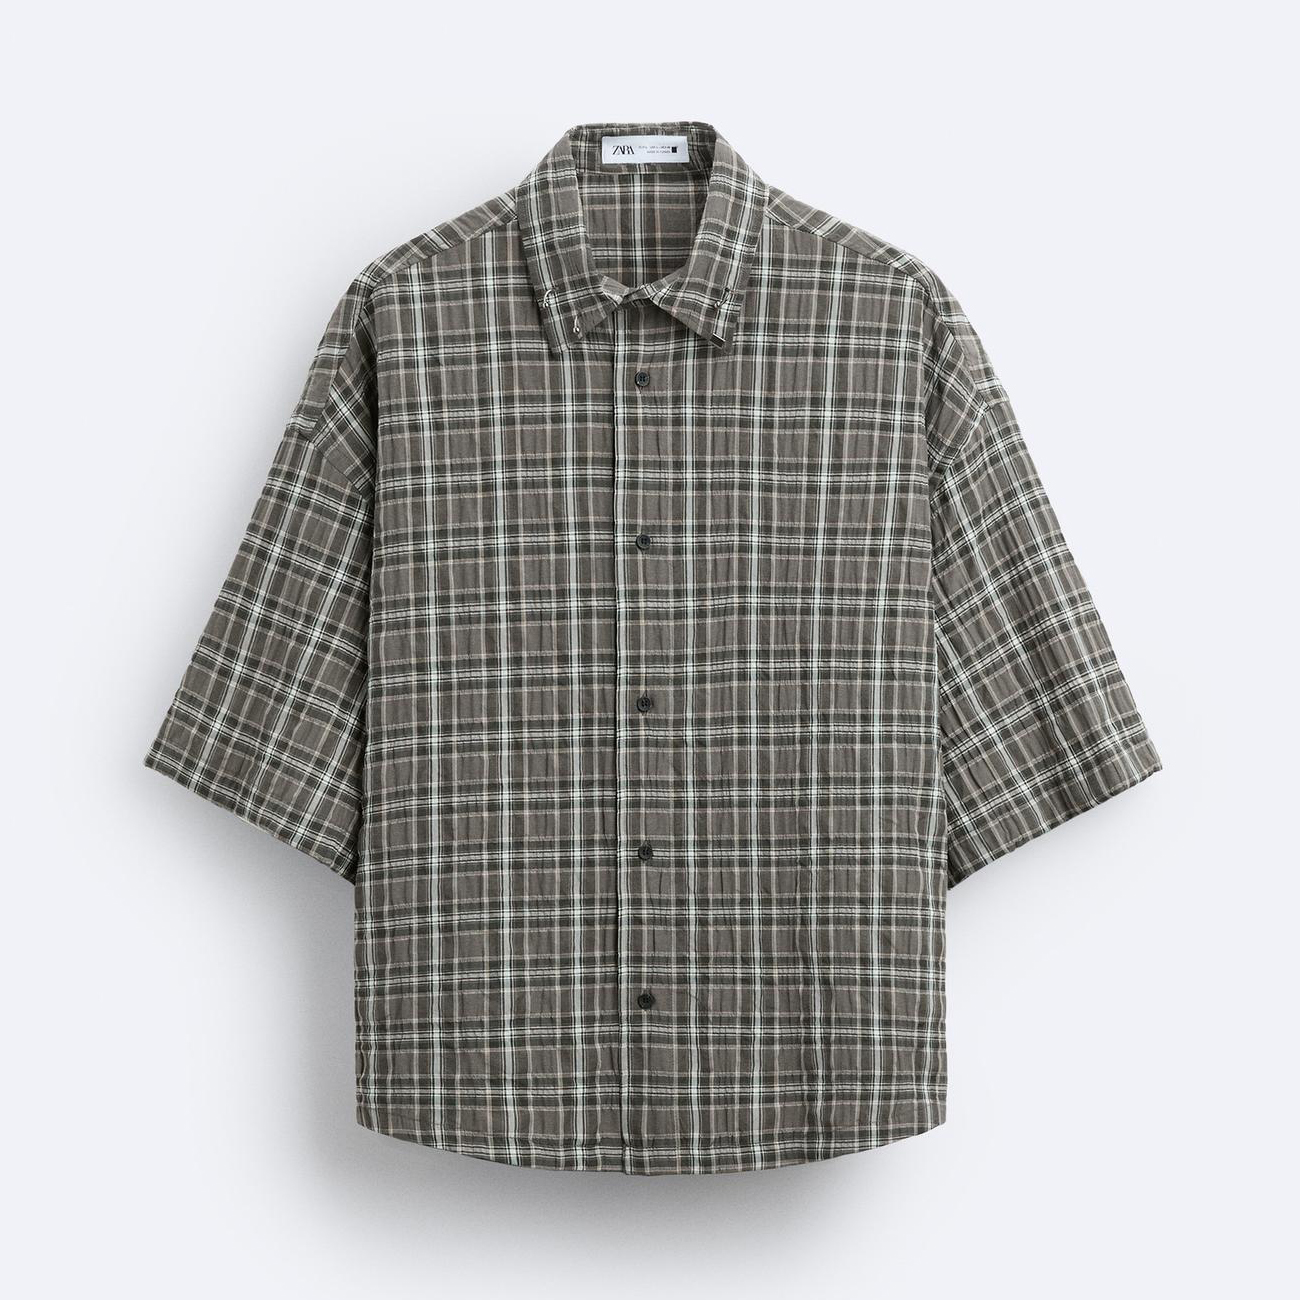 Рубашка Zara Check With Piercing Detail, серый/хаки рубашка zara kids check зеленый черный